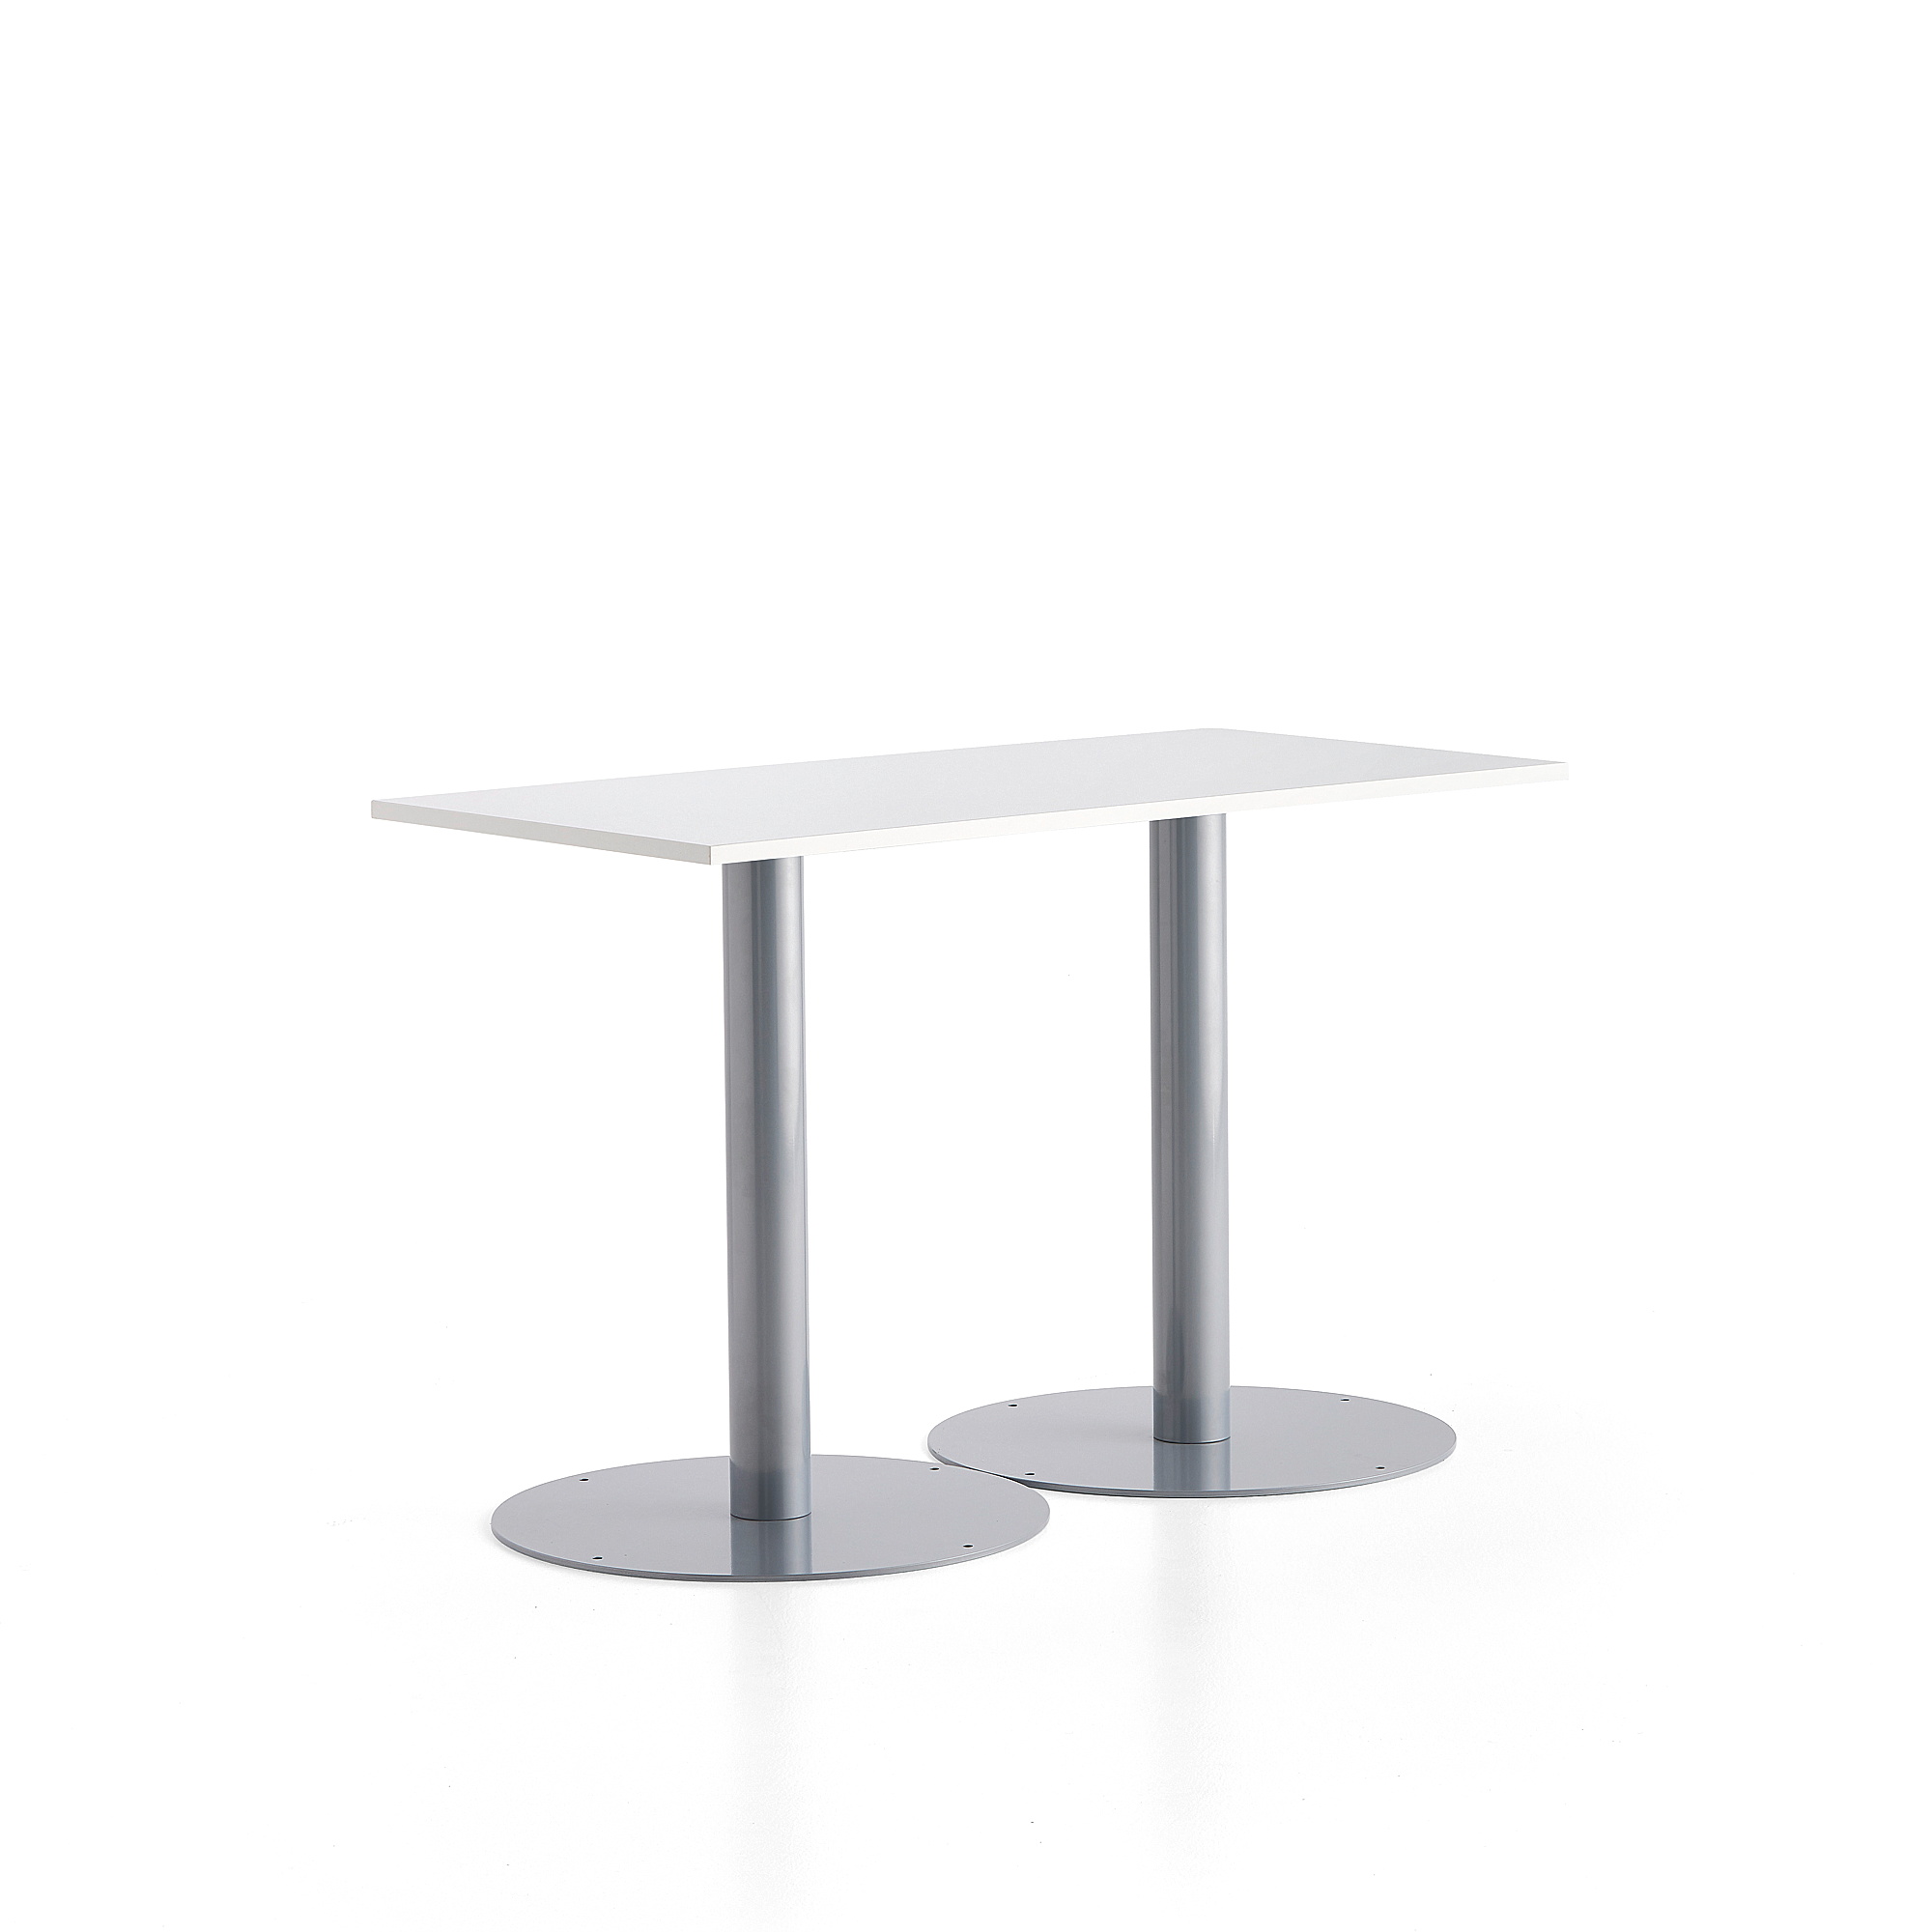 Stůl ALVA, 1400x700x900 mm, stříbrná, bílá